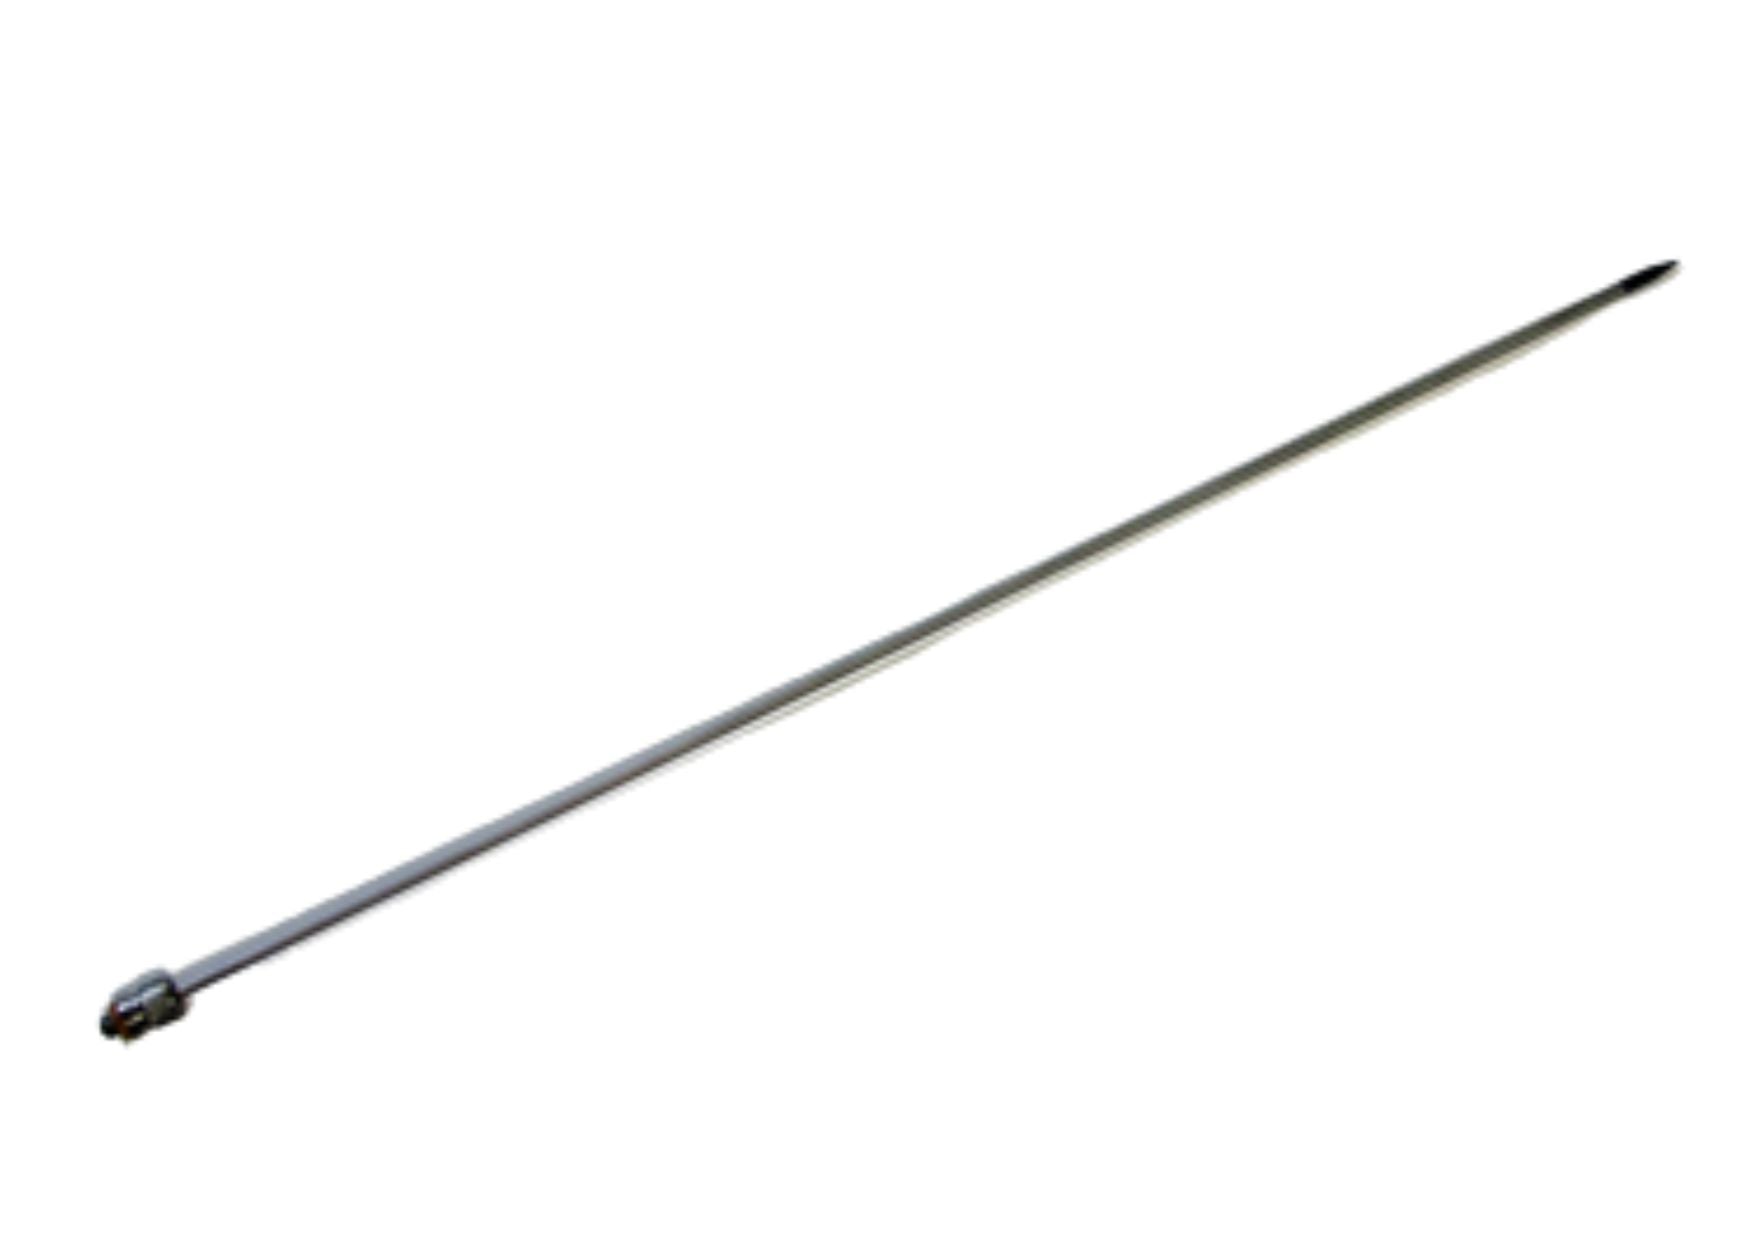 Trocar Hypo Shaft, 1/8" x 42 cm (16.5"), 12-32 thread-M, TP6325